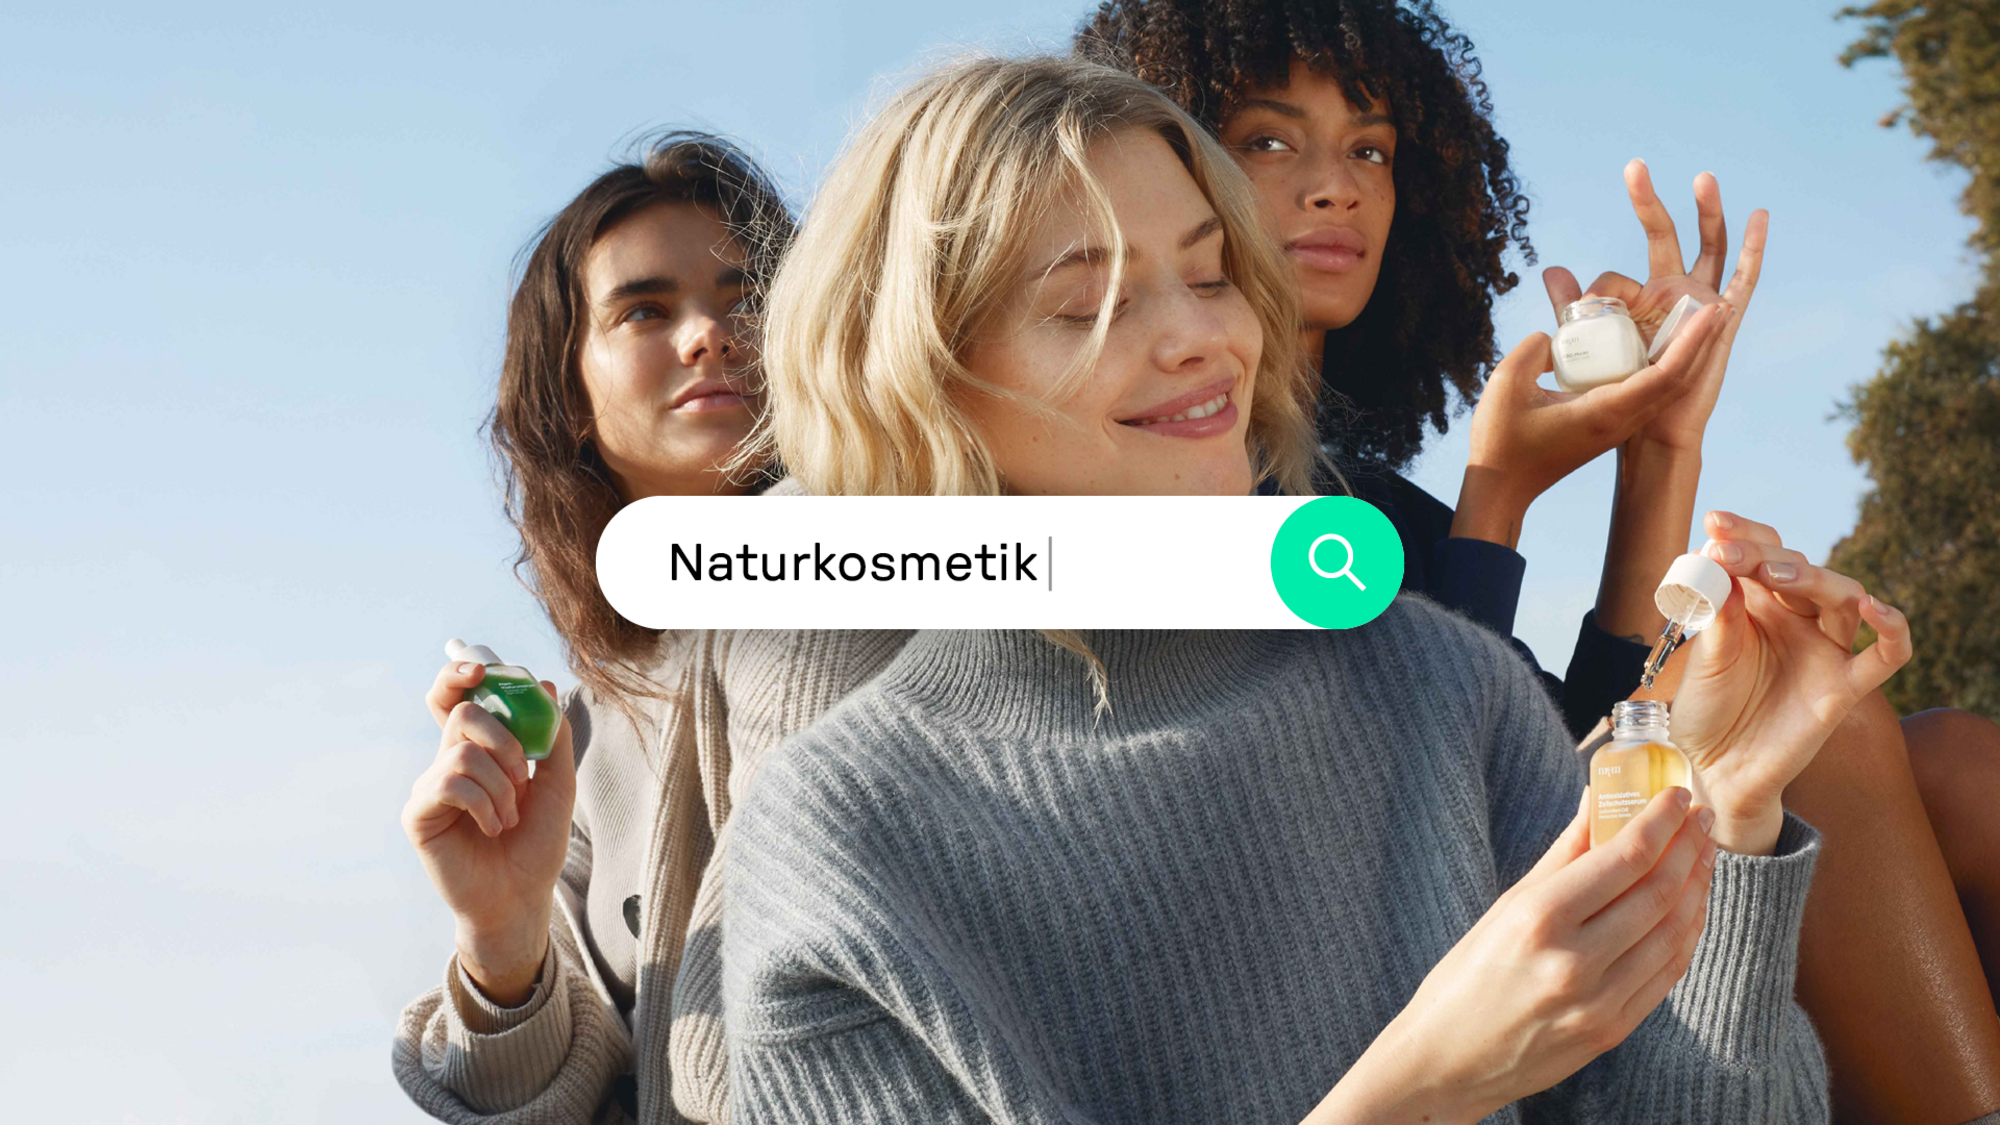 Eine Grafik zeigt vor einem Foto von drei jungen Frauen, die nkm-Produkte anwenden, eine Suchmaschinenmaske mit dem Suchbegriff Naturkosmetik.